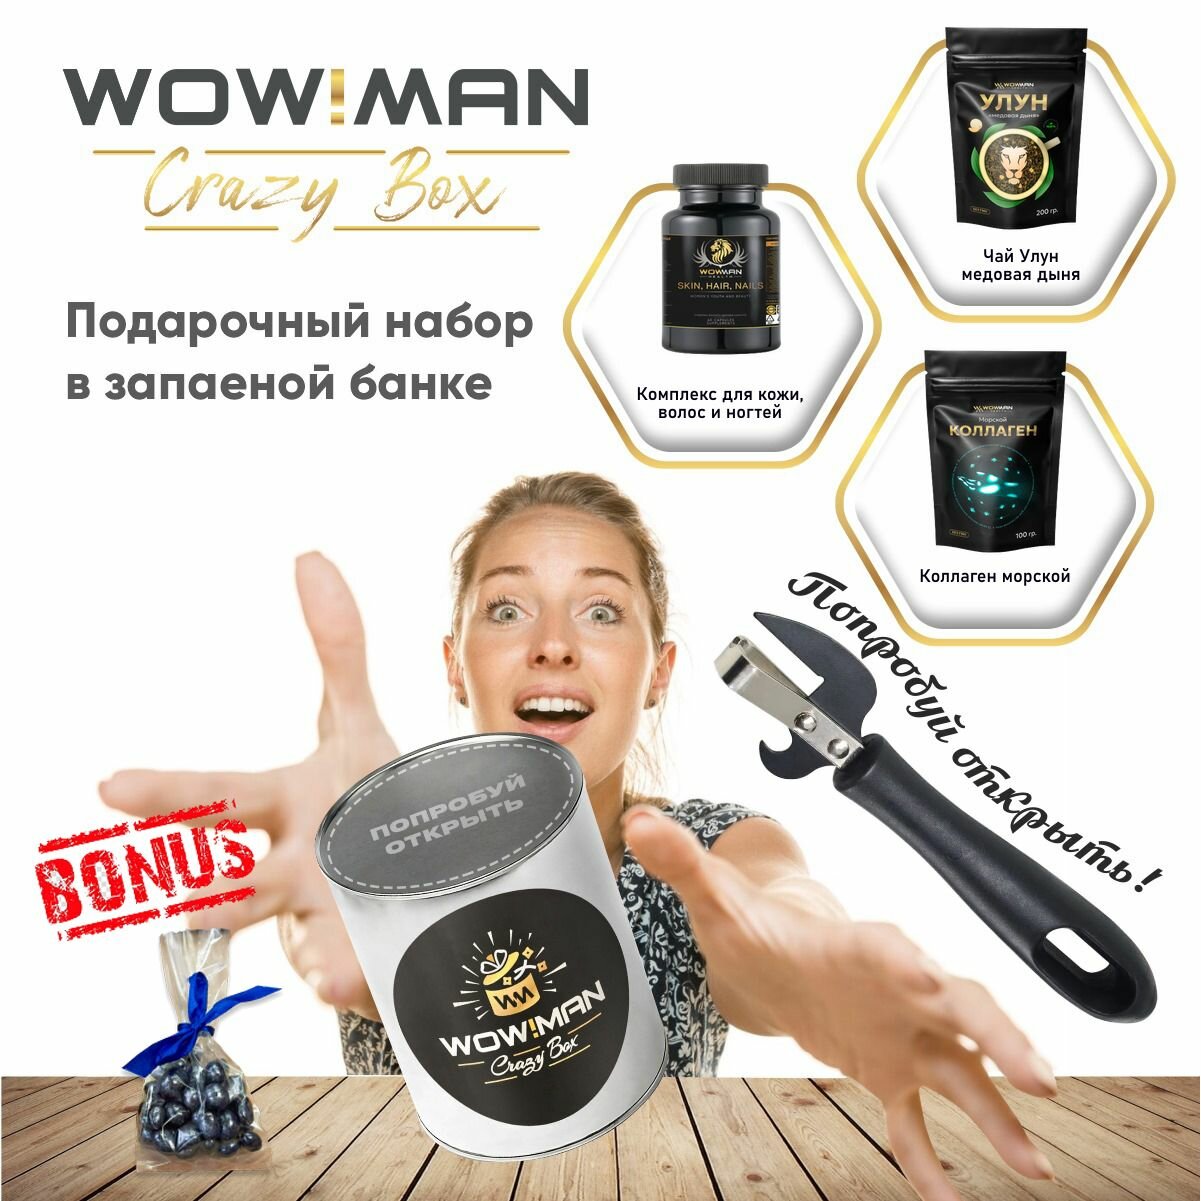 Подарочный набор WowMan Crazy Box Комплекс для кожи, волос и ногтей/Улун медовая дыня/Коллаген морской